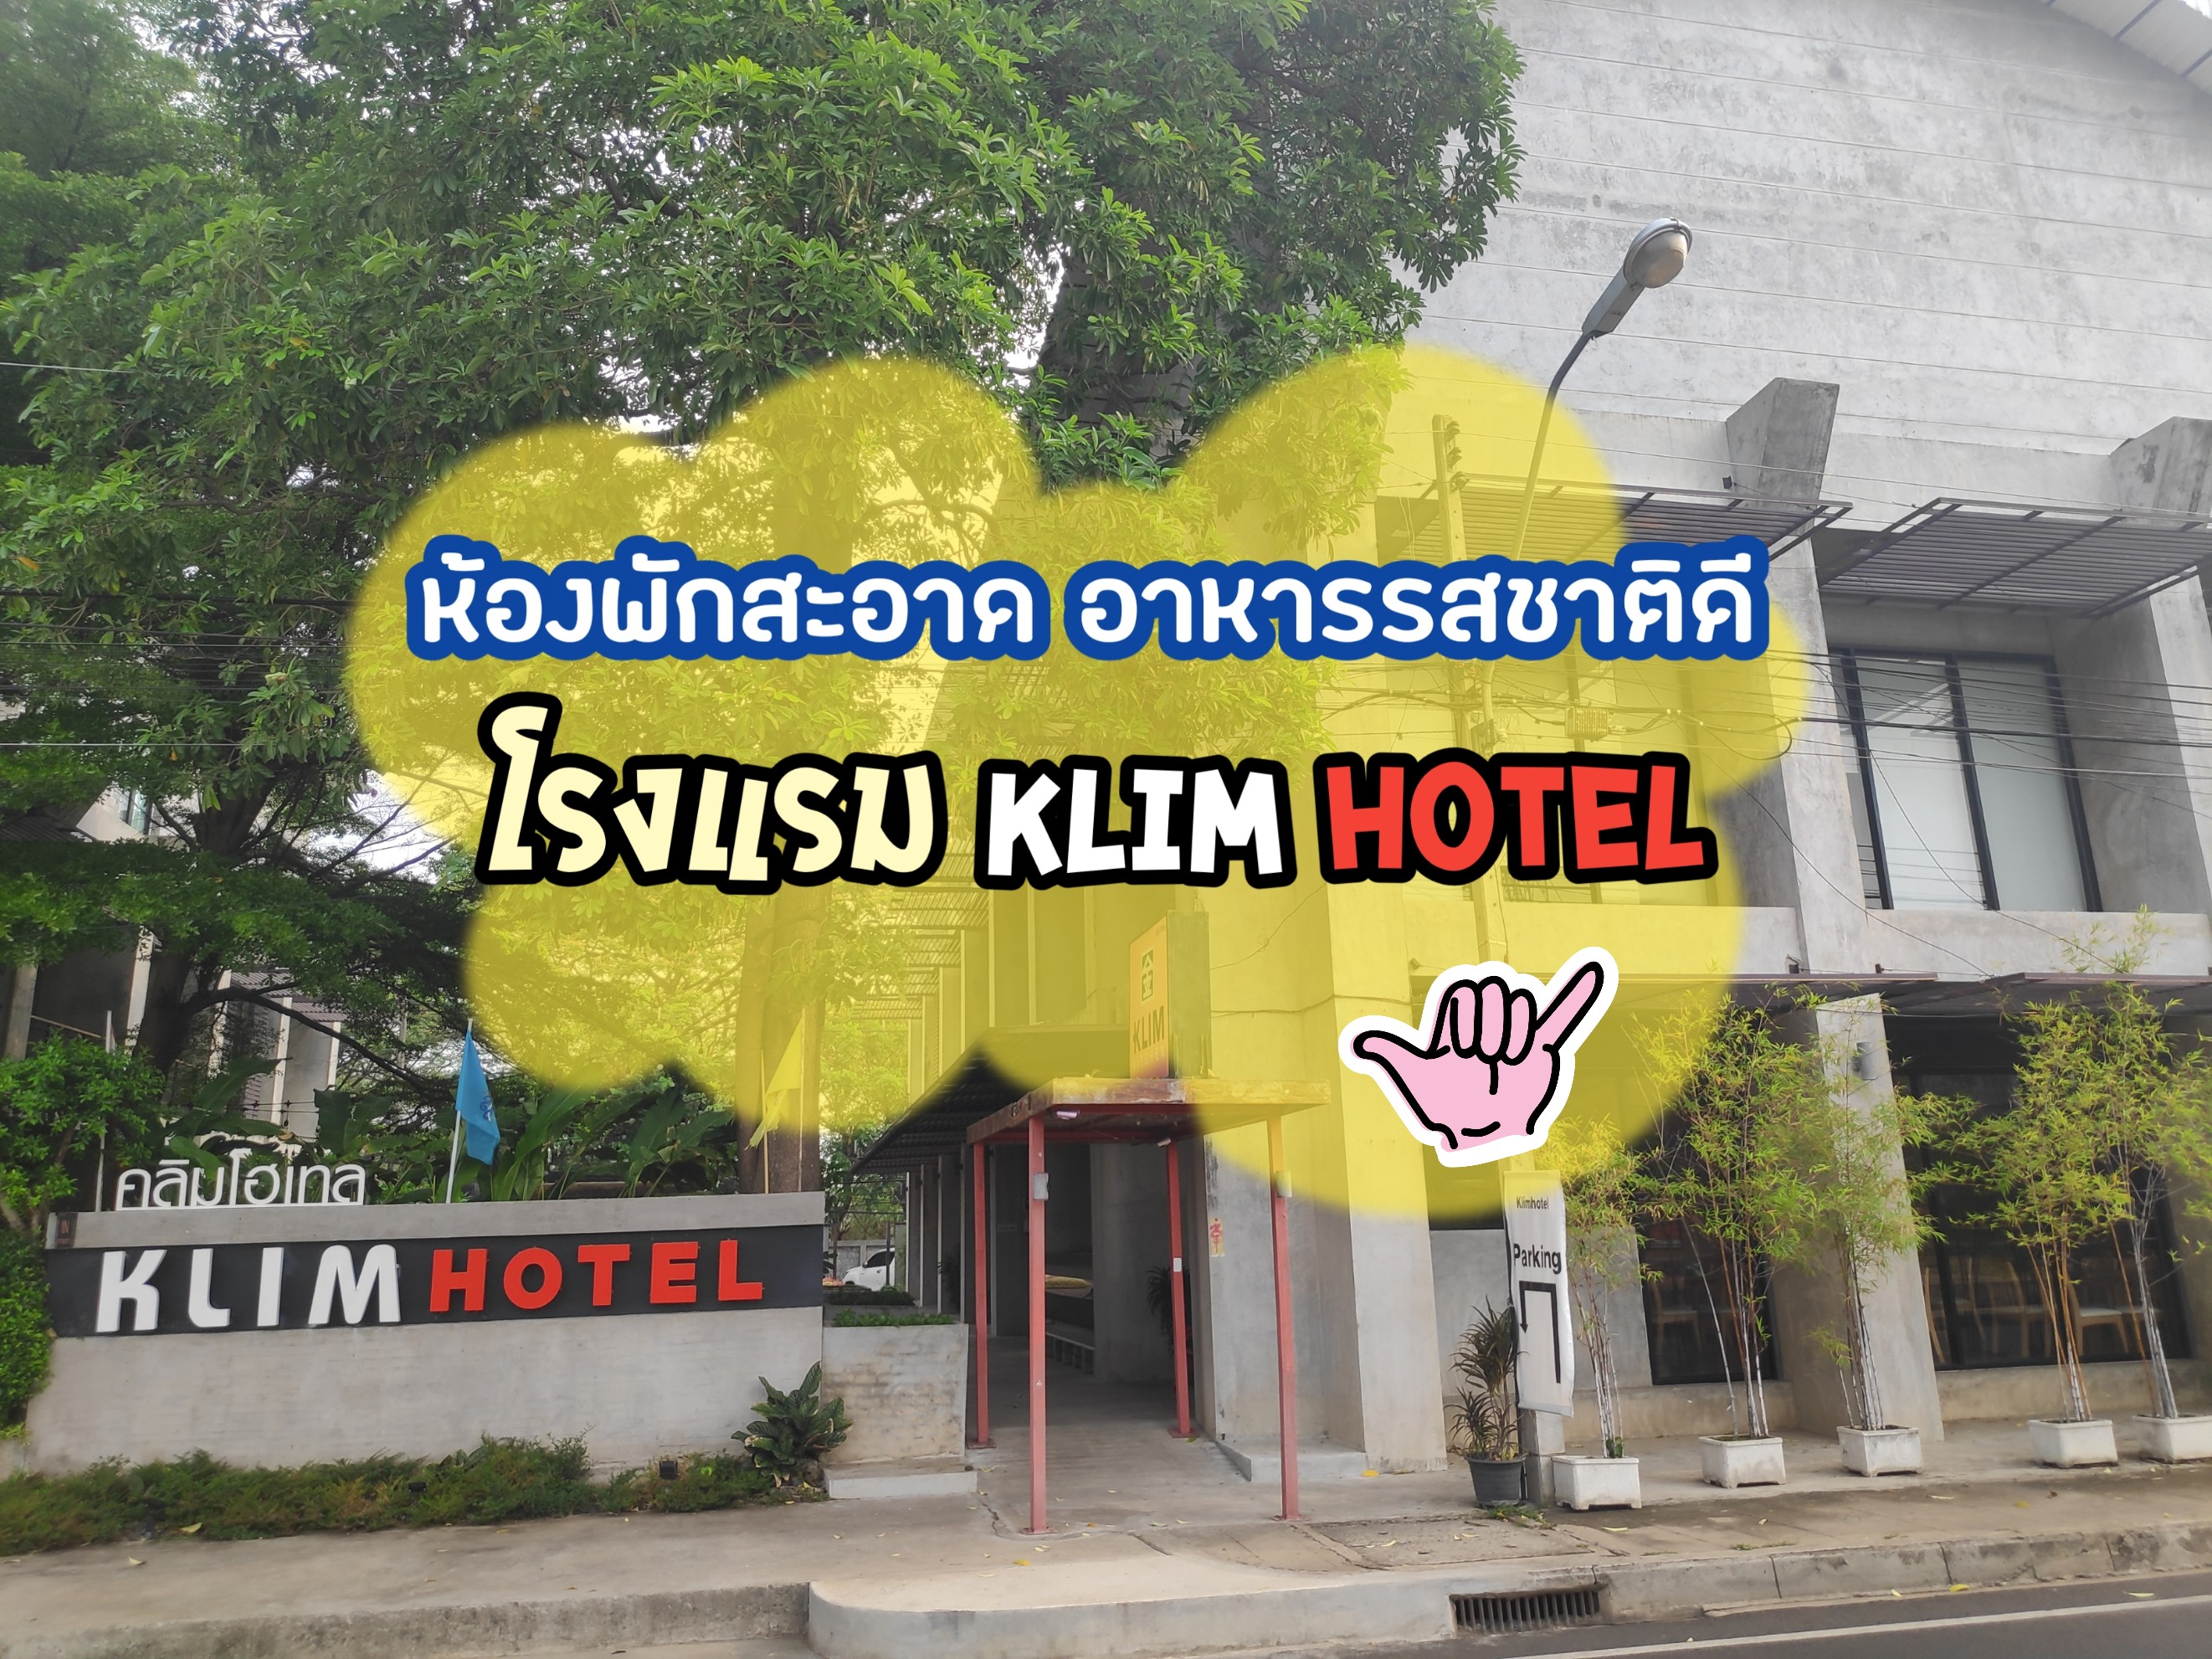 ห้องนอนสะอาด อาหารรสชาติดี ต้องที่โรงแรม Klim Hotel